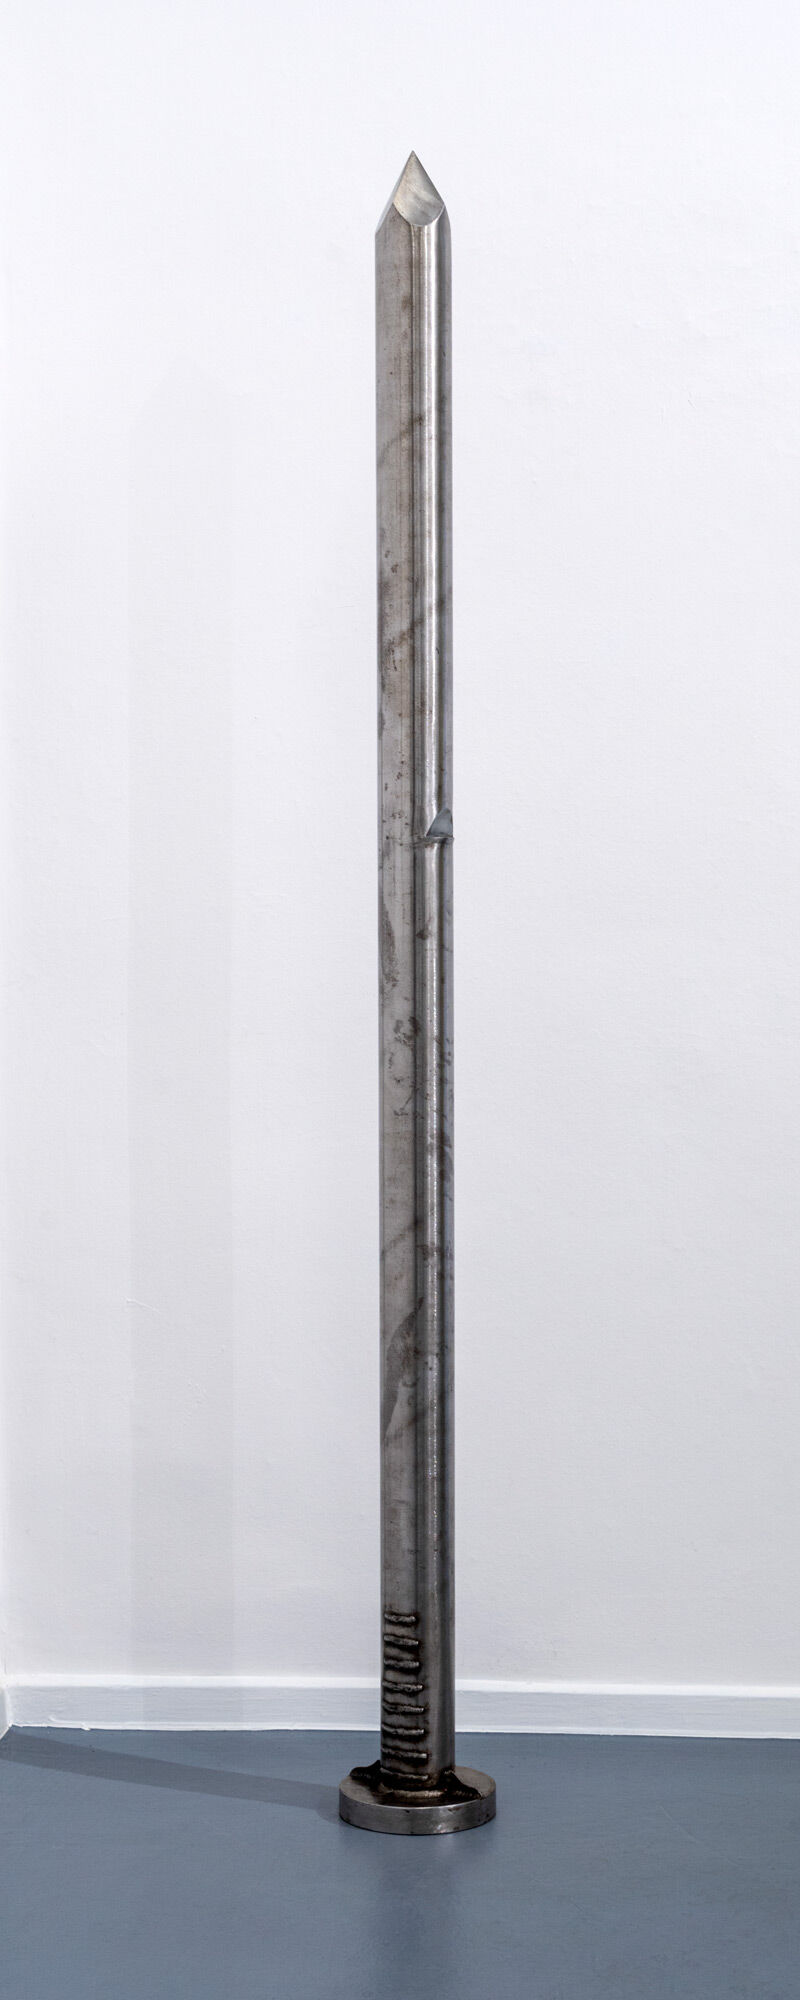 Skulptur "Nagelskulptur" (1967/2014) von Günther Uecker